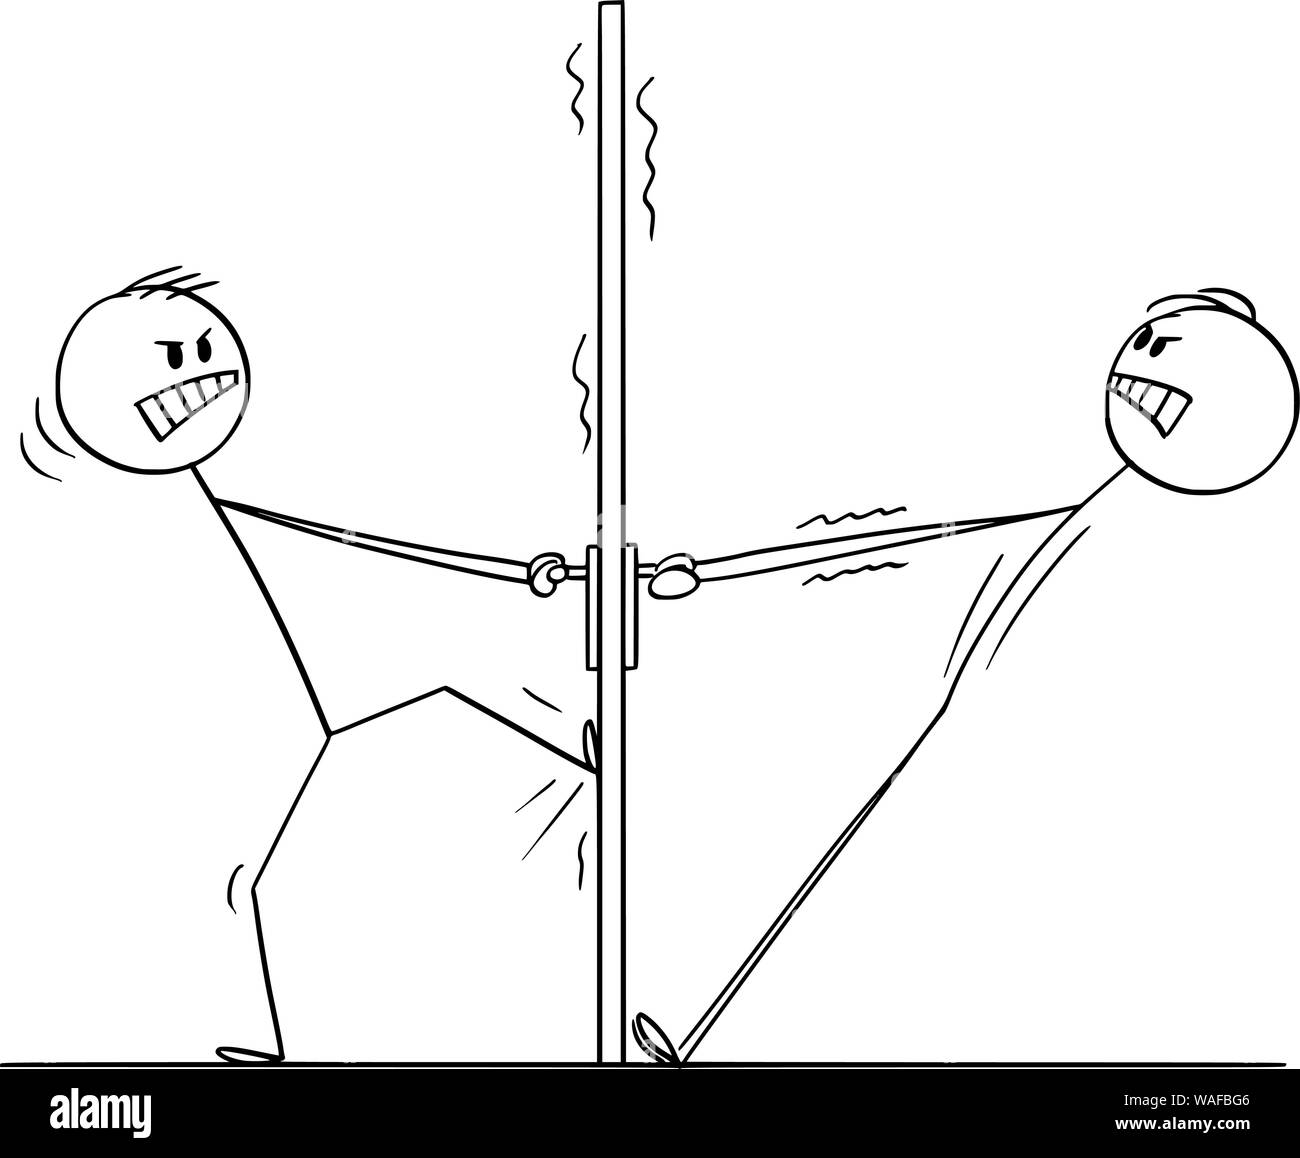 Vector cartoon stick figura disegno illustrazione concettuale di due uomini arrabbiati o imprenditori cercando di aprire la porta da entrambi i lati e che non hanno collaborato. Illustrazione Vettoriale